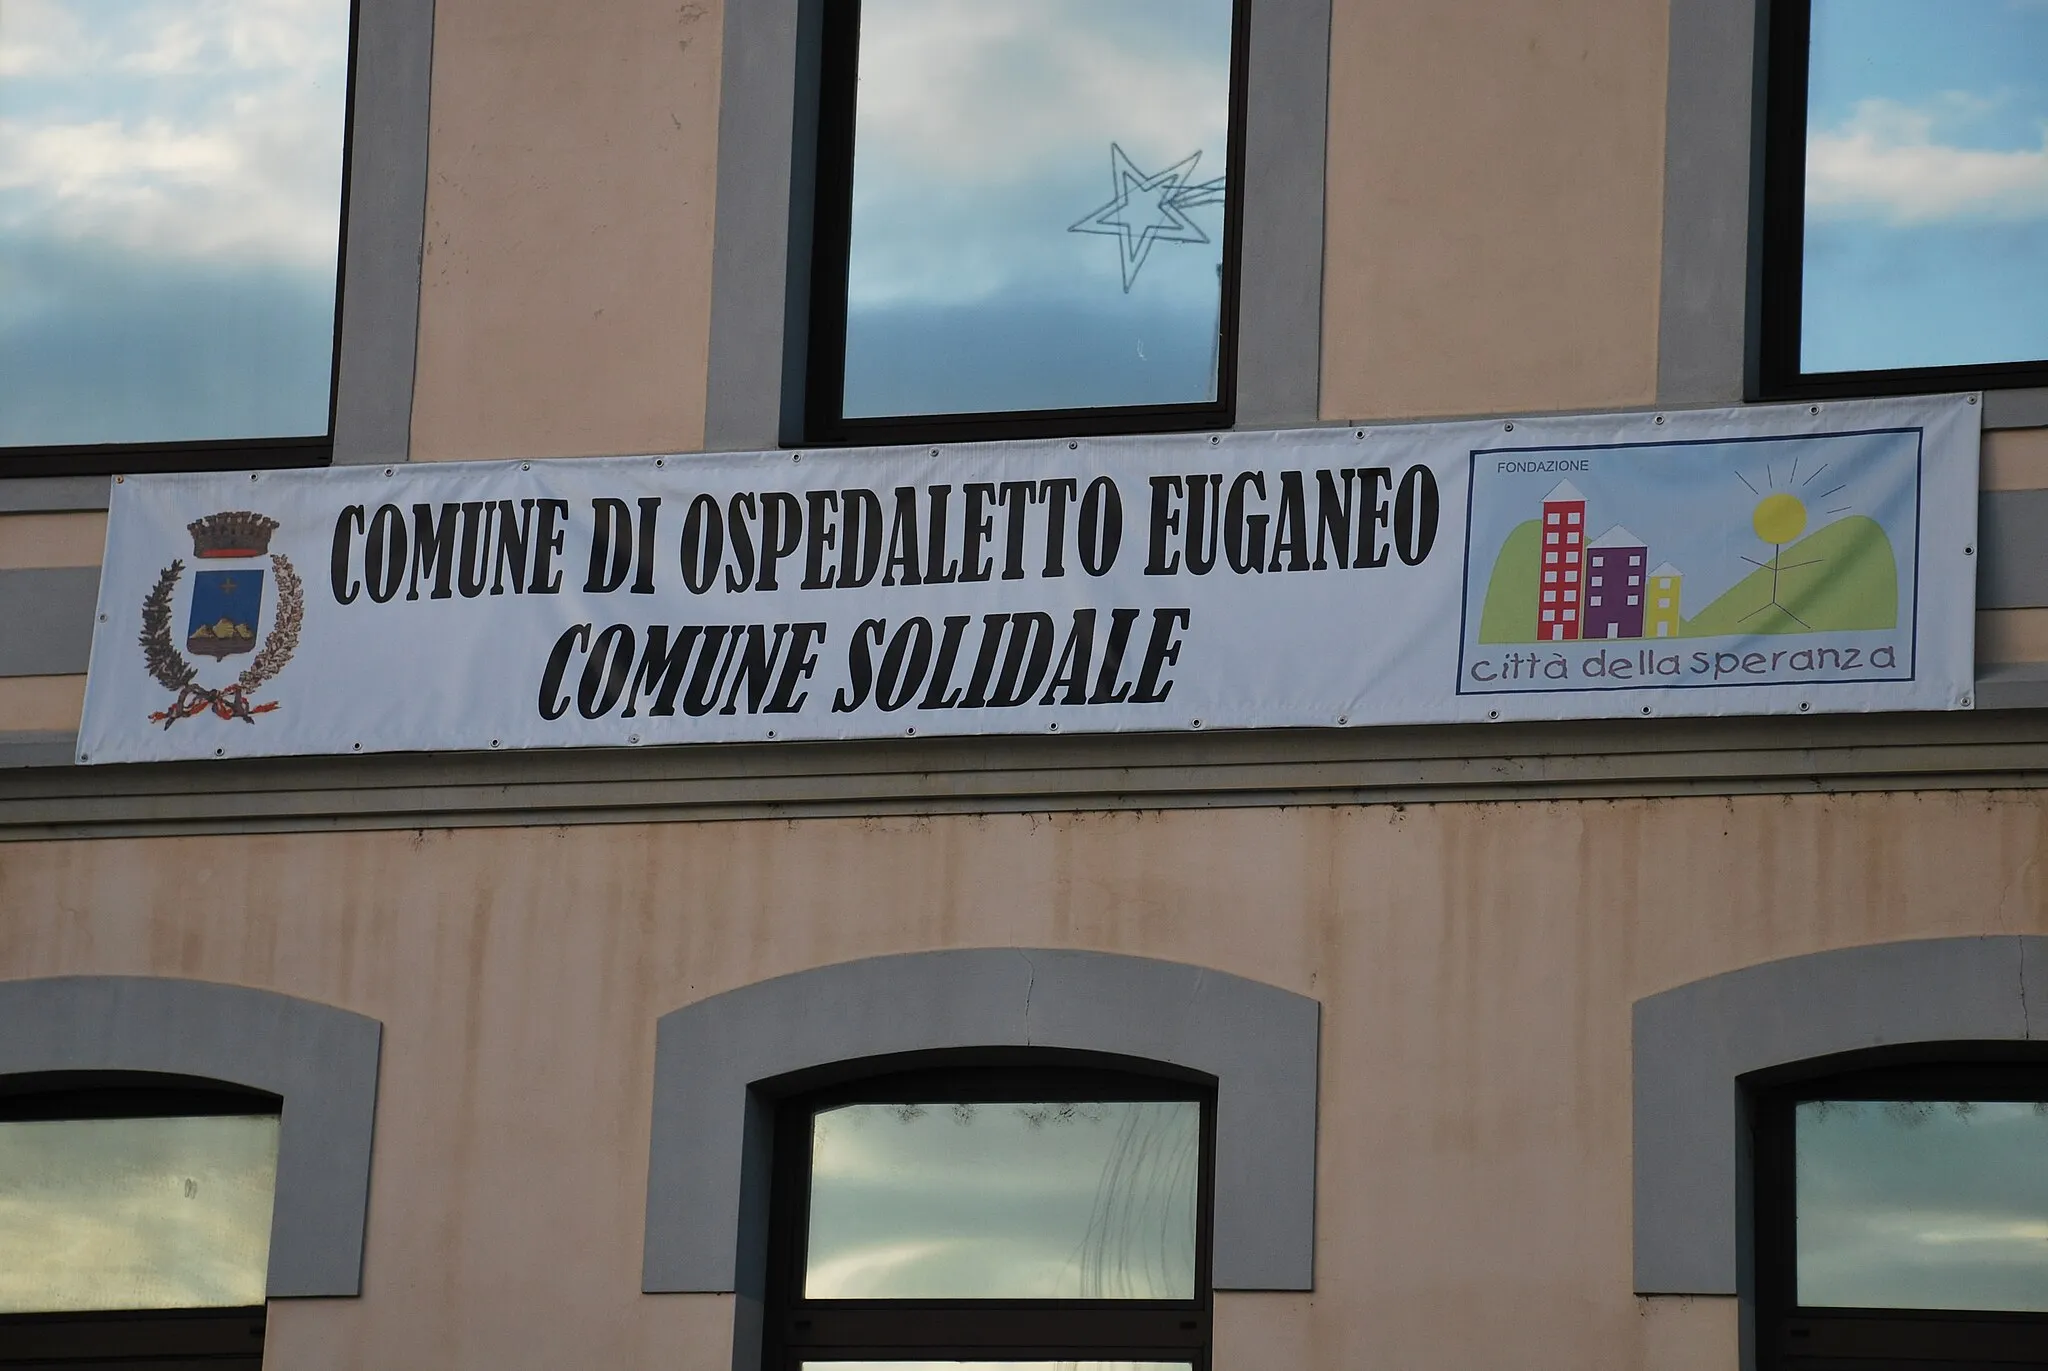 Photo showing: Ospedaletto Euganeo e la Città della Speranza